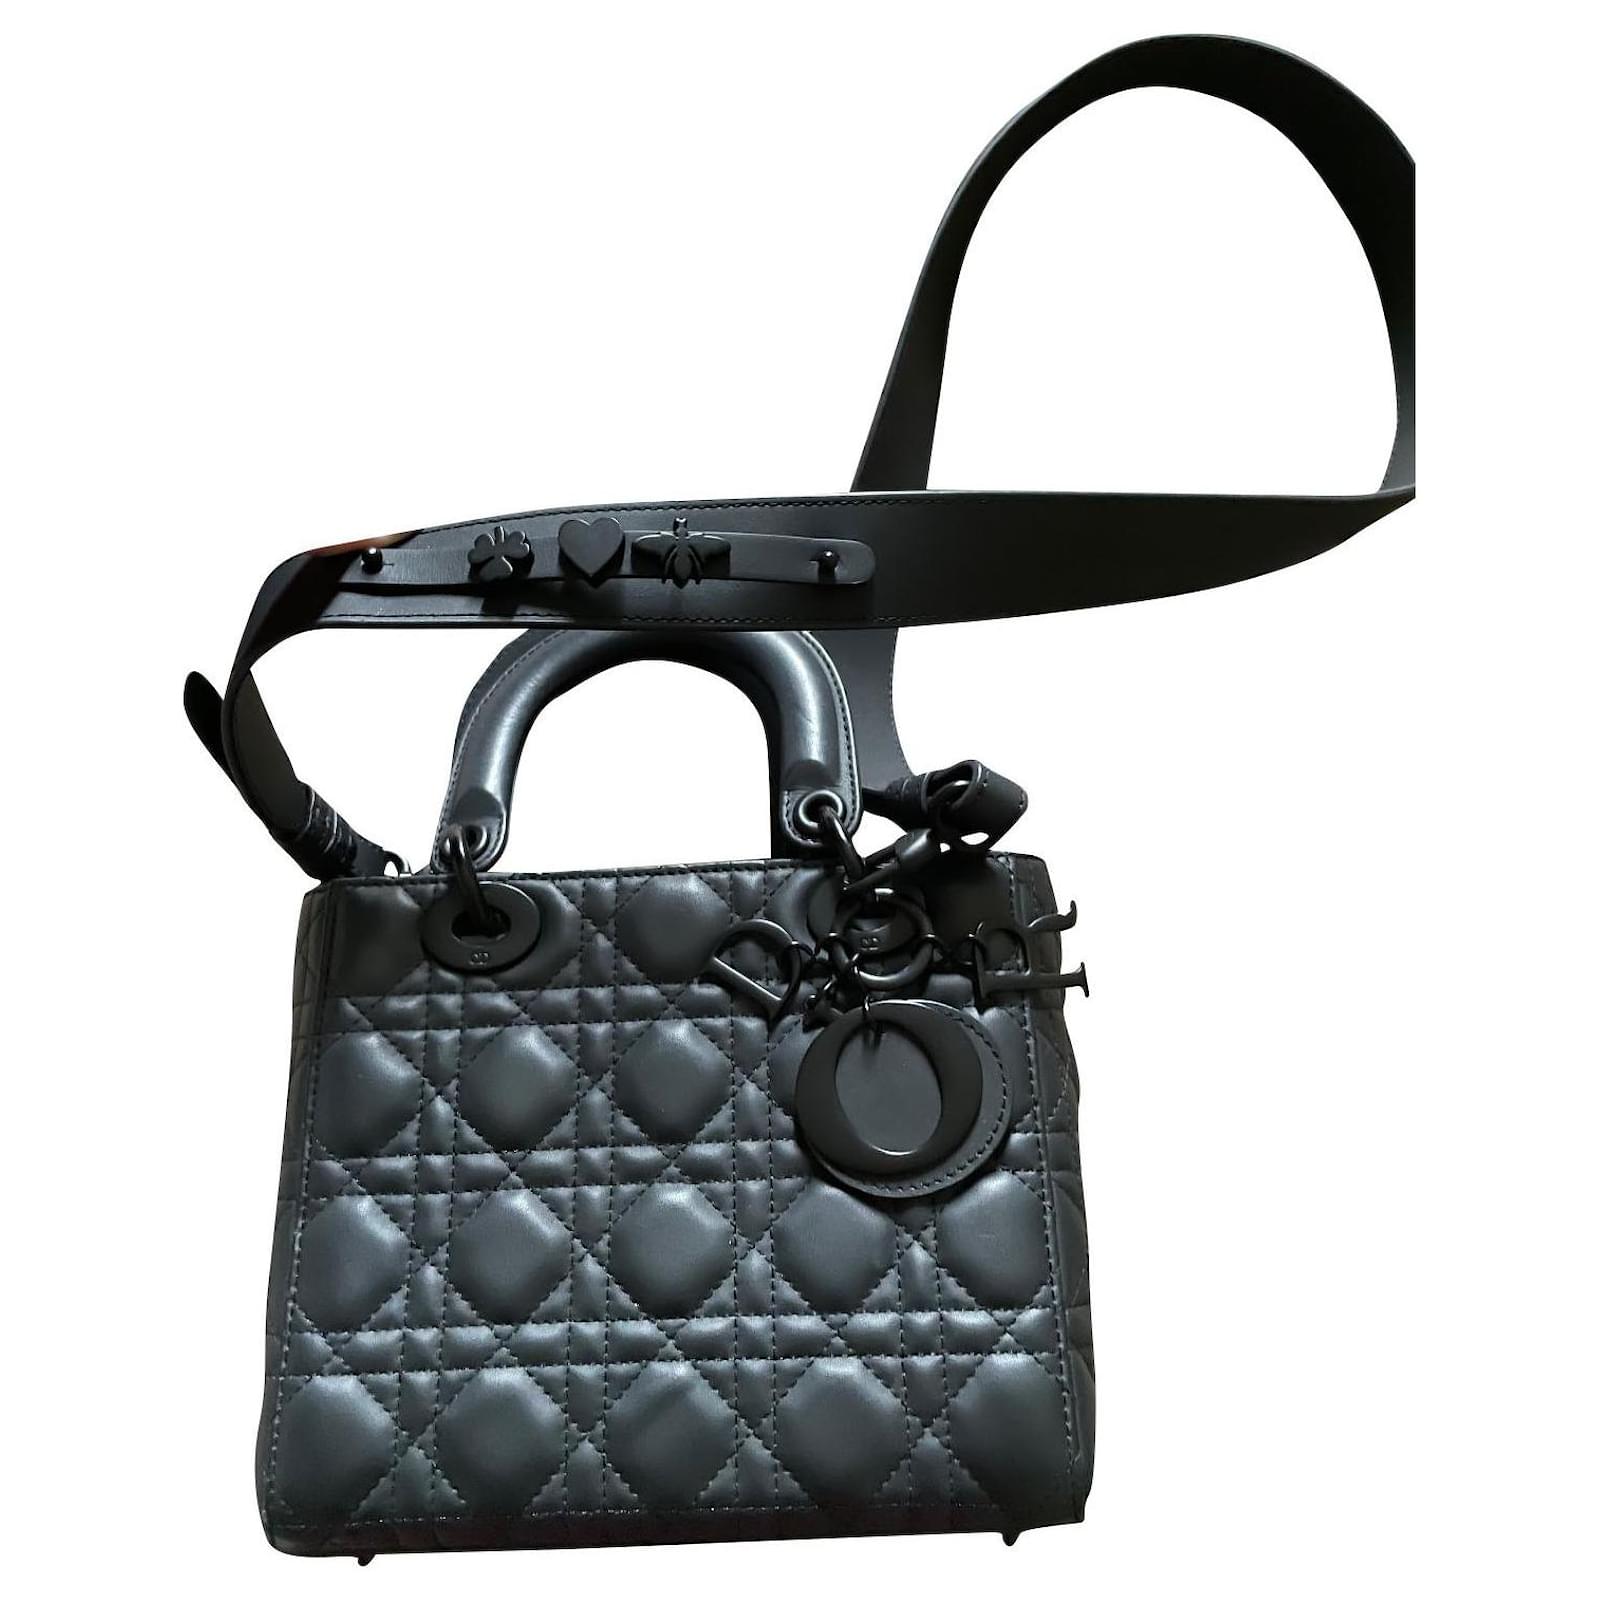 Dior Lady Dior My ABCDIOR Bag